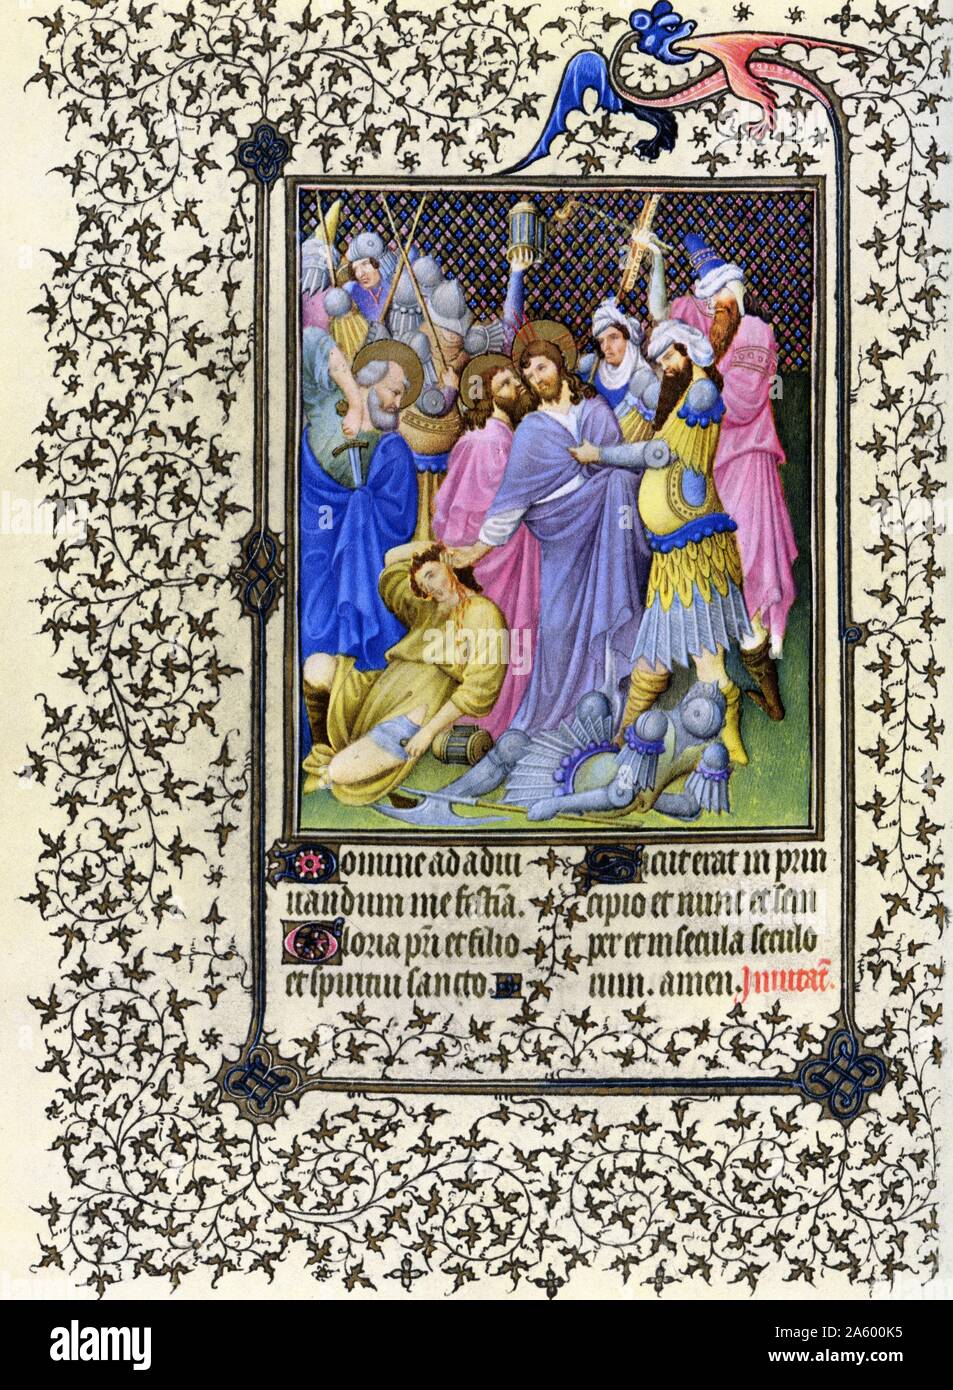 Darstellung des Kuss des Judas von Belles Heures von Jean de France, Duc de Berry (schöne Stunden) eine frühe 15. Jahrhundert illuminierte Handschrift Buch von Stunden Beleuchtung. Vom 15. Jahrhundert Stockfoto